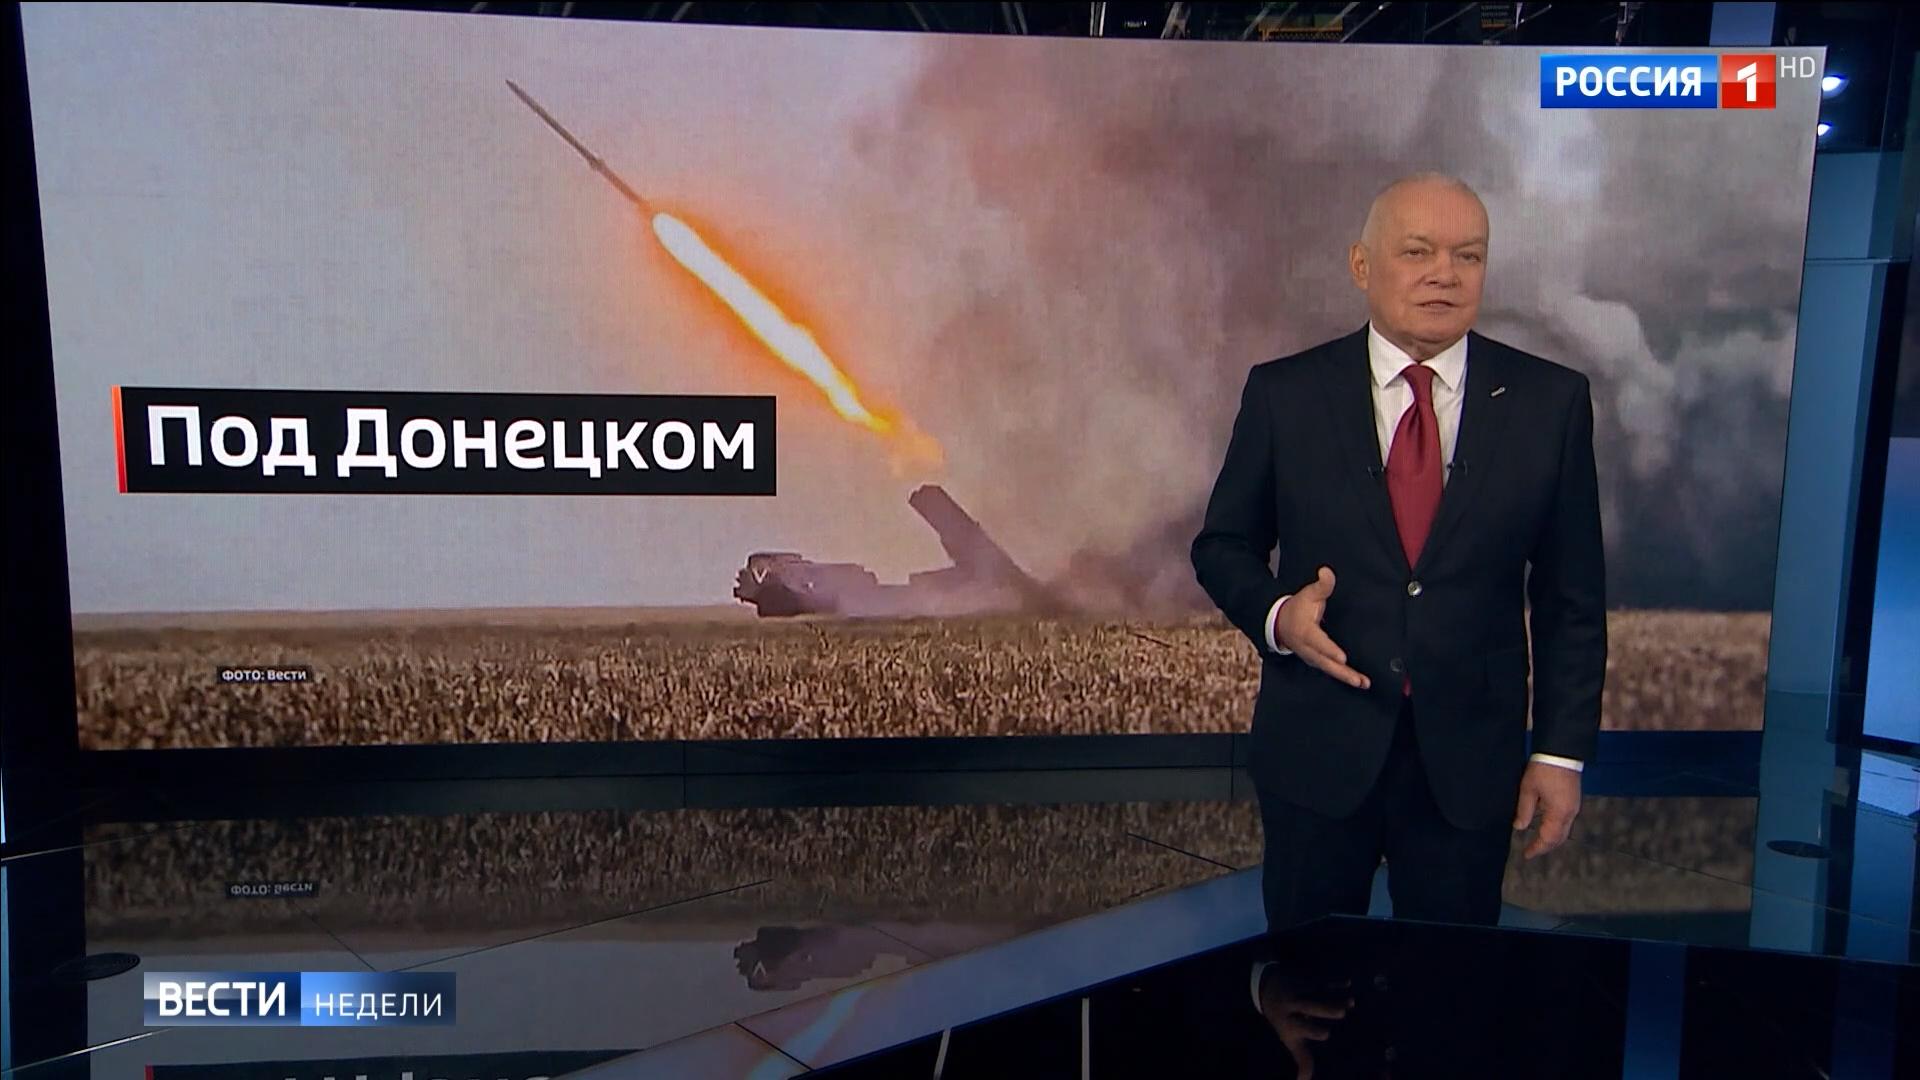 Starszy pan w telewizyjnym studio na tle zdjęcia ostrzału i rosyjskiego napisu 'pod Donieckiem"